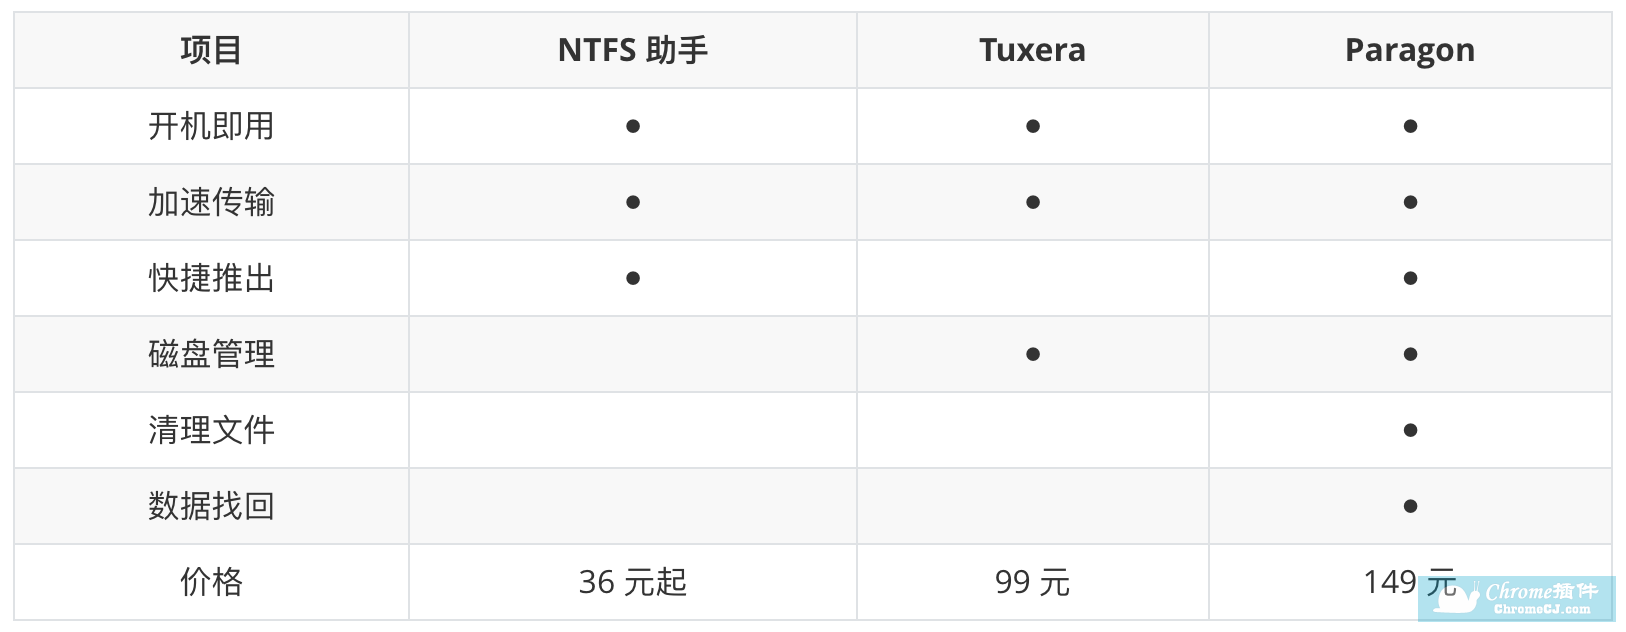 NTFS 助手 vs 其他 NTFS 工具